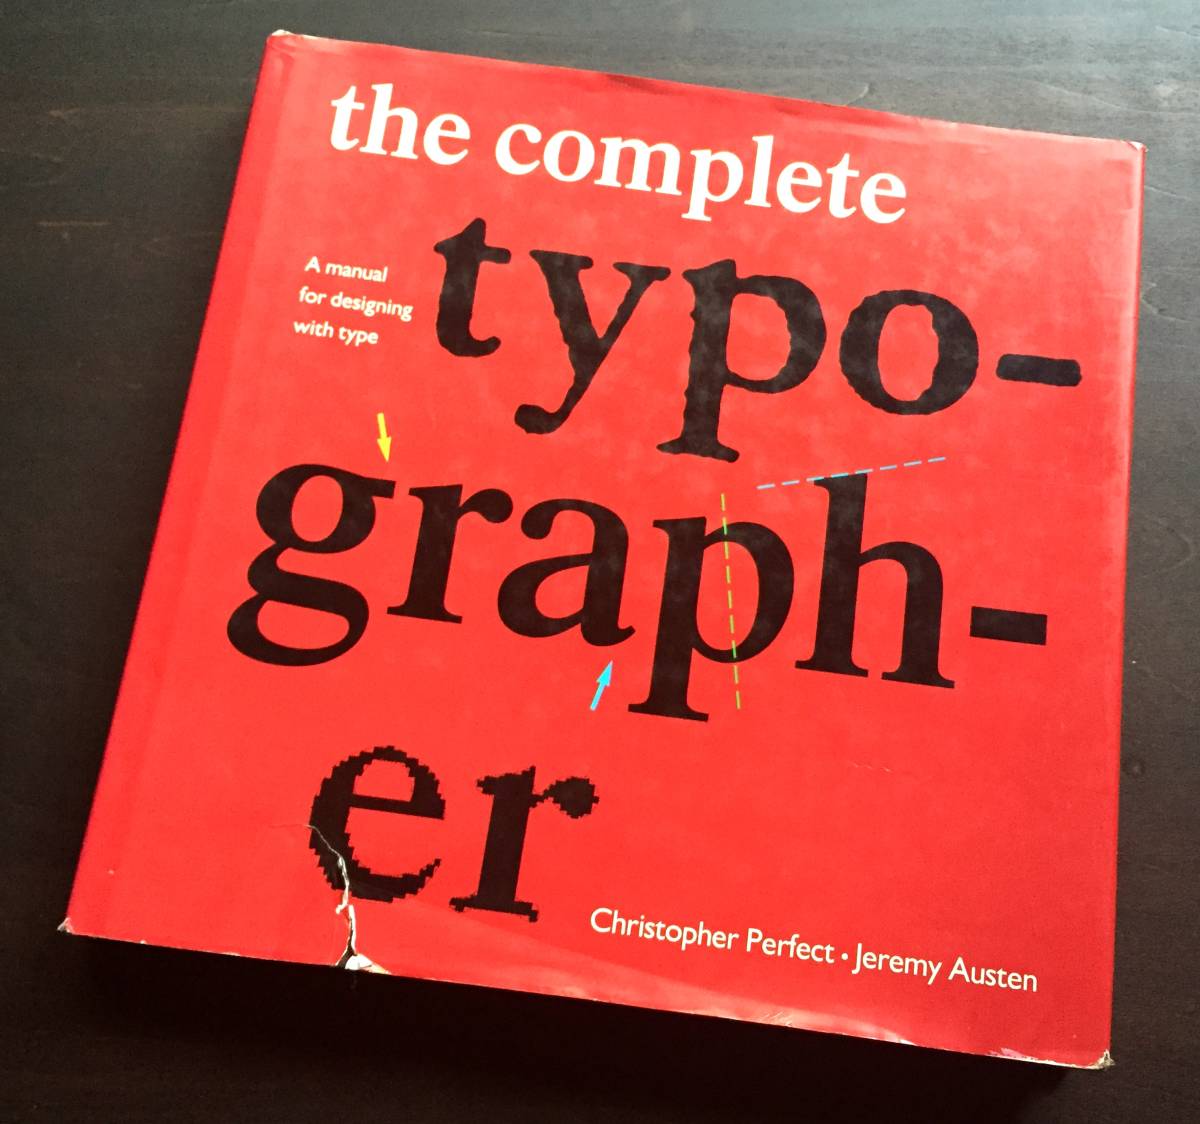 【洋書】『 The Complete Typographer 』Christopher Perfect　1992 ●歴史 書体 活字 タイポグラフィ 最高の効果を得るための実践的ガイド_画像1